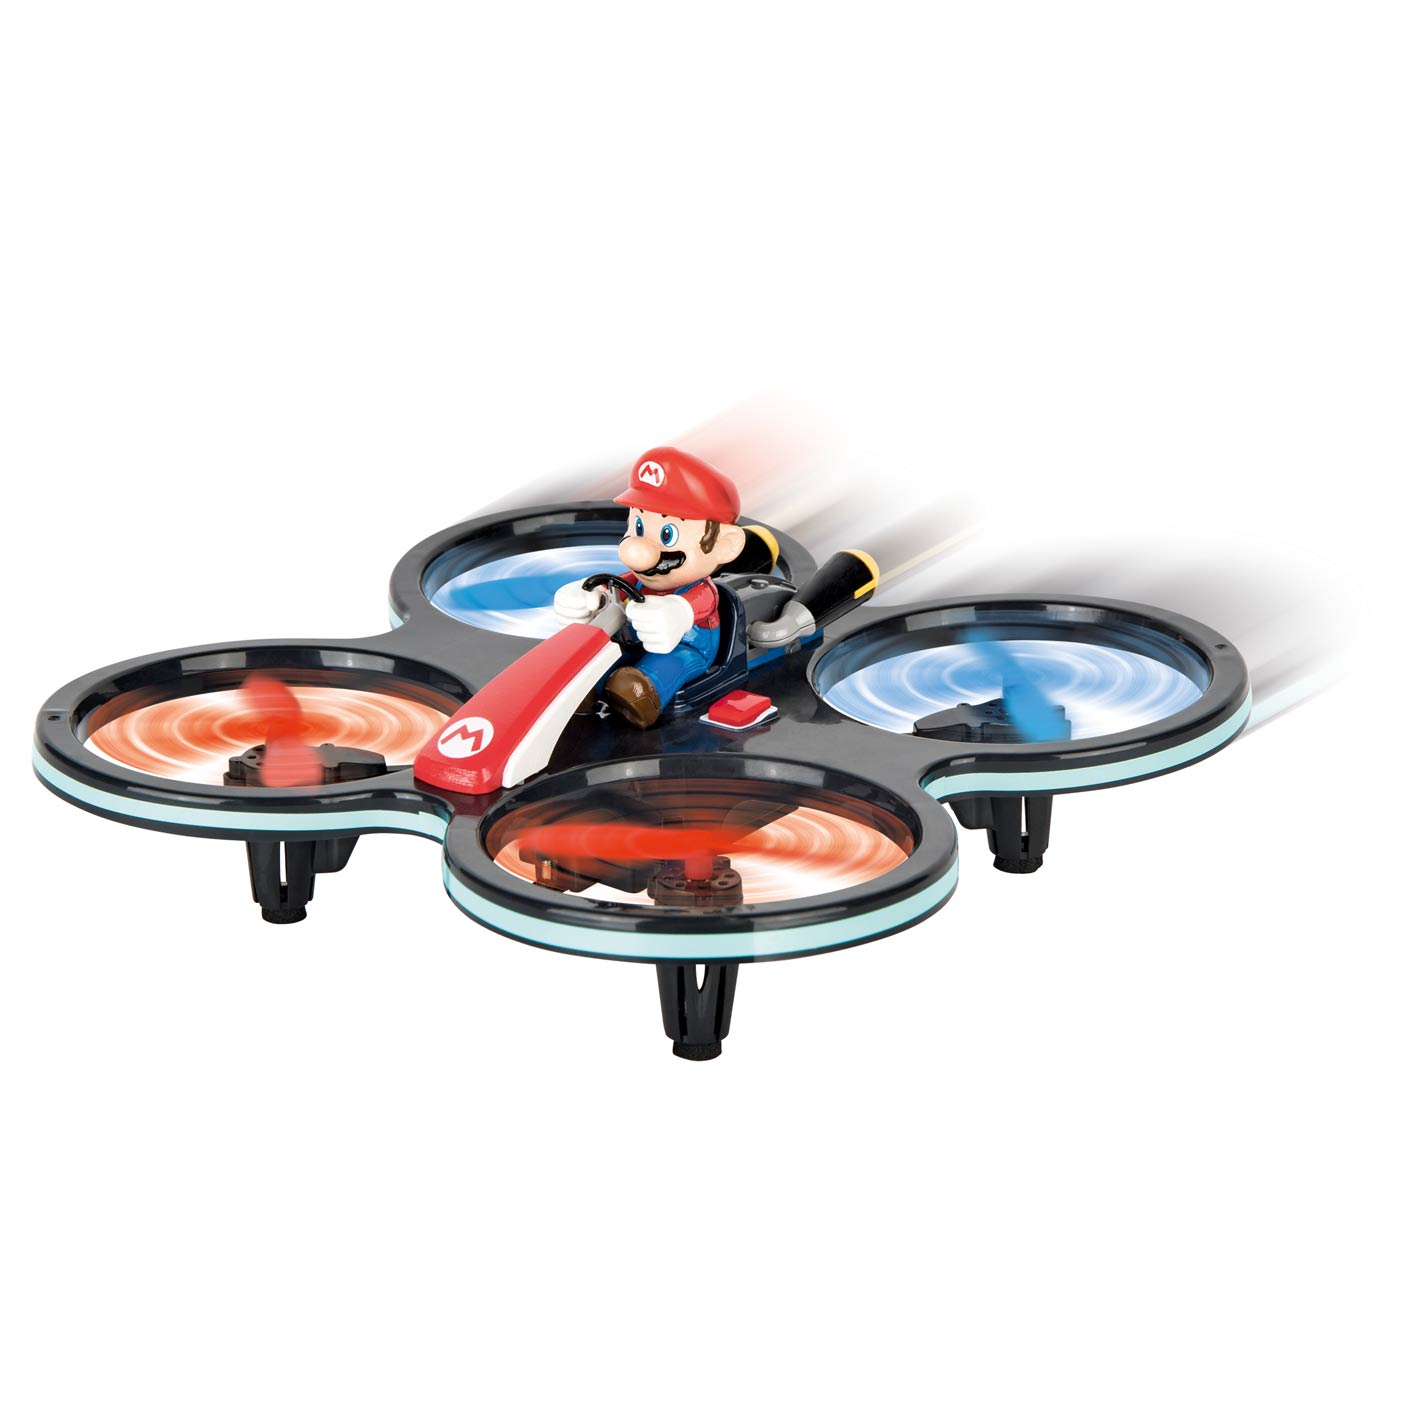 Nintendo AIR Drone - Super Mario 2,4GHZ Mini Mario-Copter